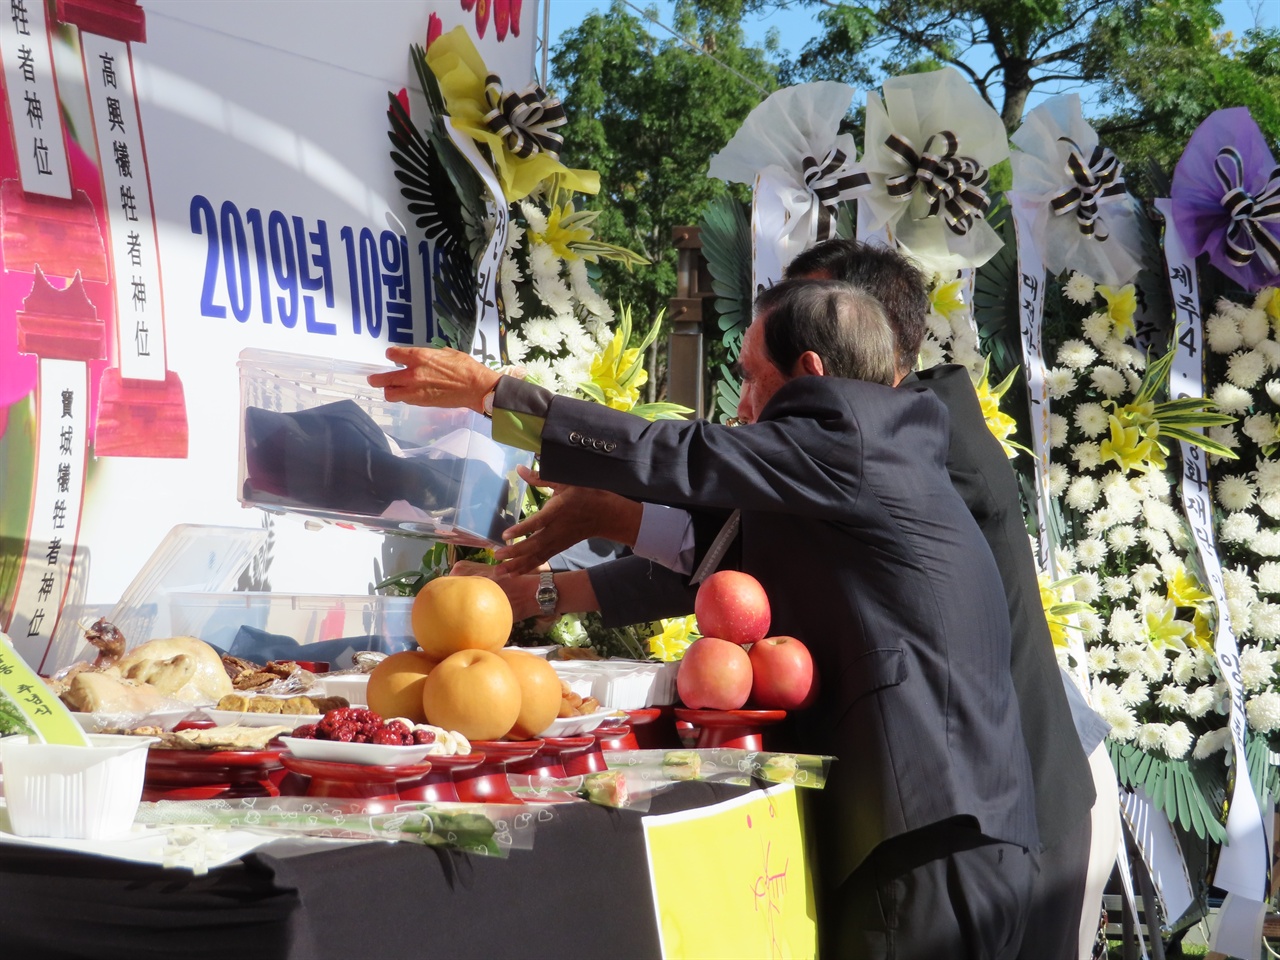 10월 19일 순천 장대공원에서 열린 71주년 여순항쟁 민간인 희생자 합동 추추념식장에서 유족들이 고인들의 넋을 기리며 새 옷을 헌진하고 있다. 